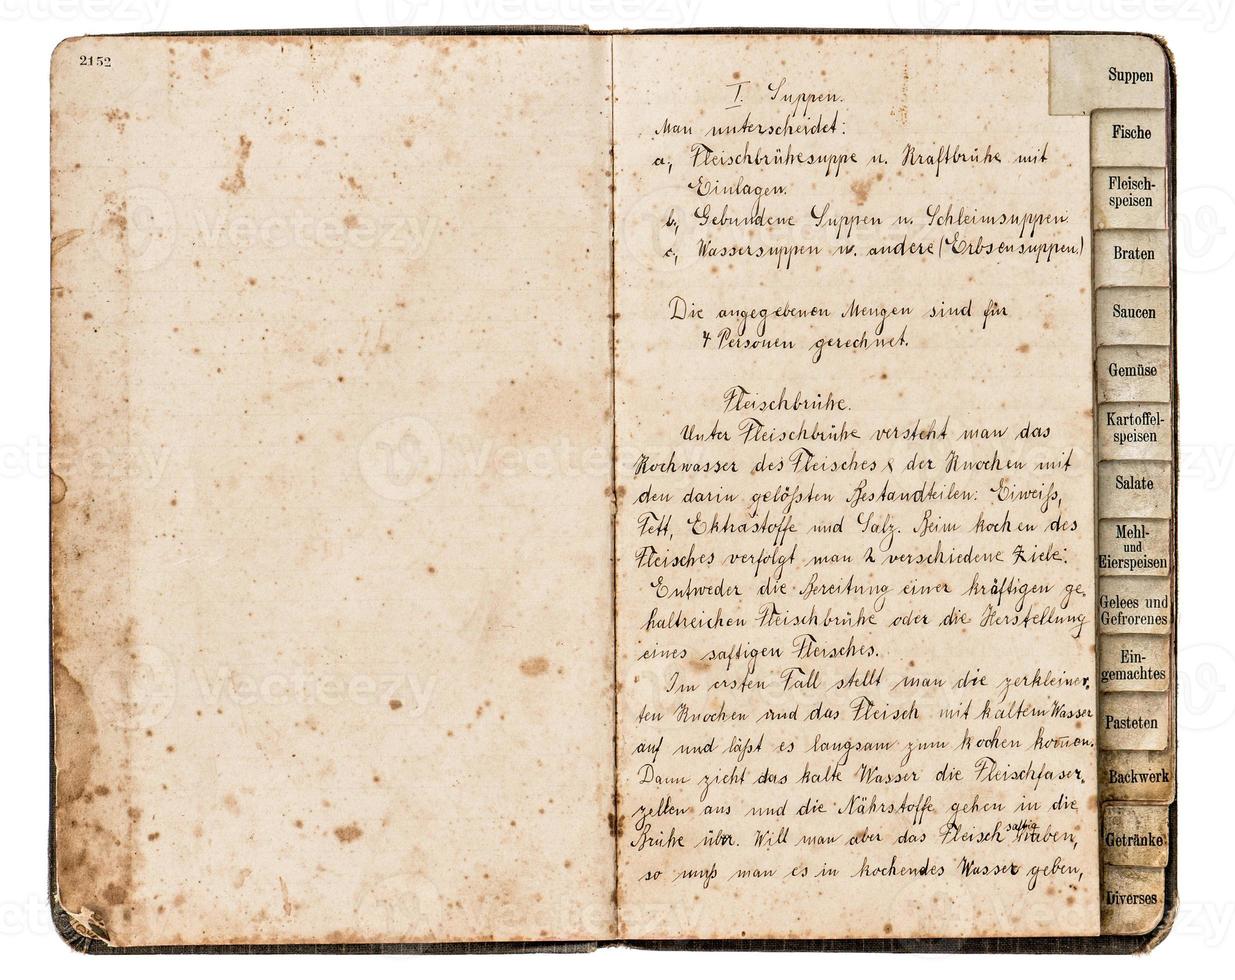 livro de receitas antigas com texto manuscrito foto